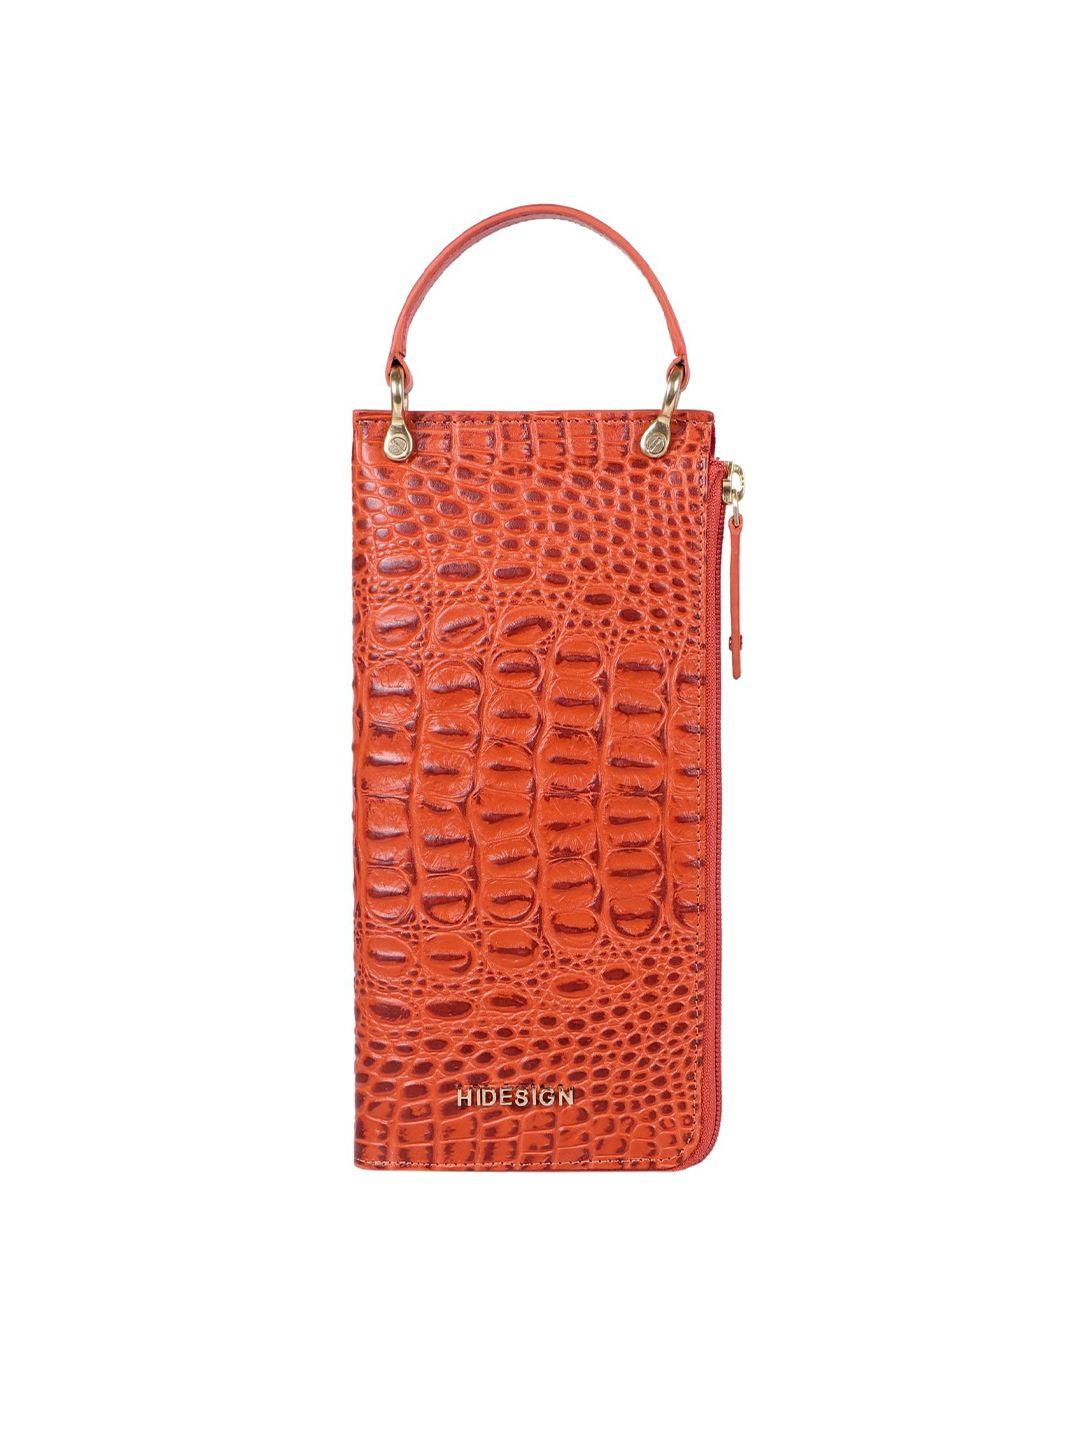 hidesign women orange crocodile textured leather zip around wallet